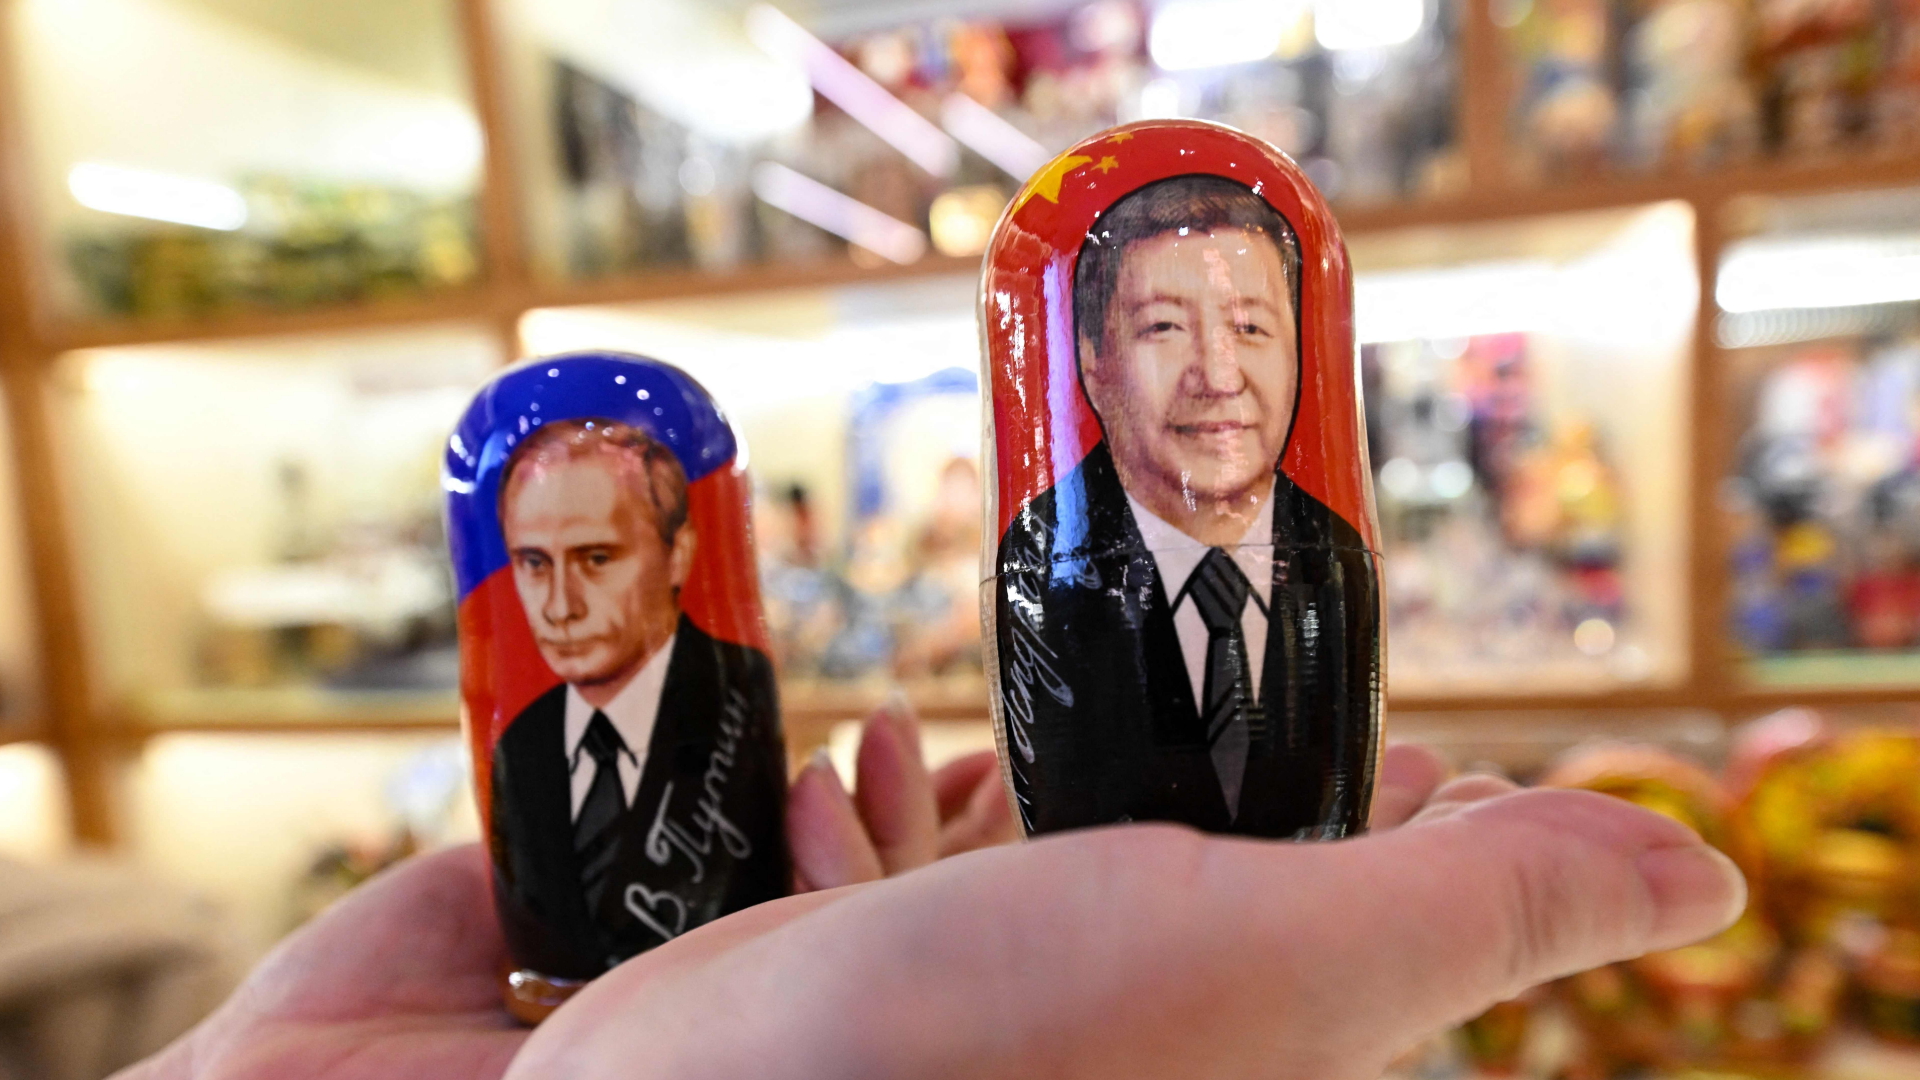 Xi Jinping (r.) und Wladimir Putin als russische Holzpuppen, auch Matrjoschka genannt.